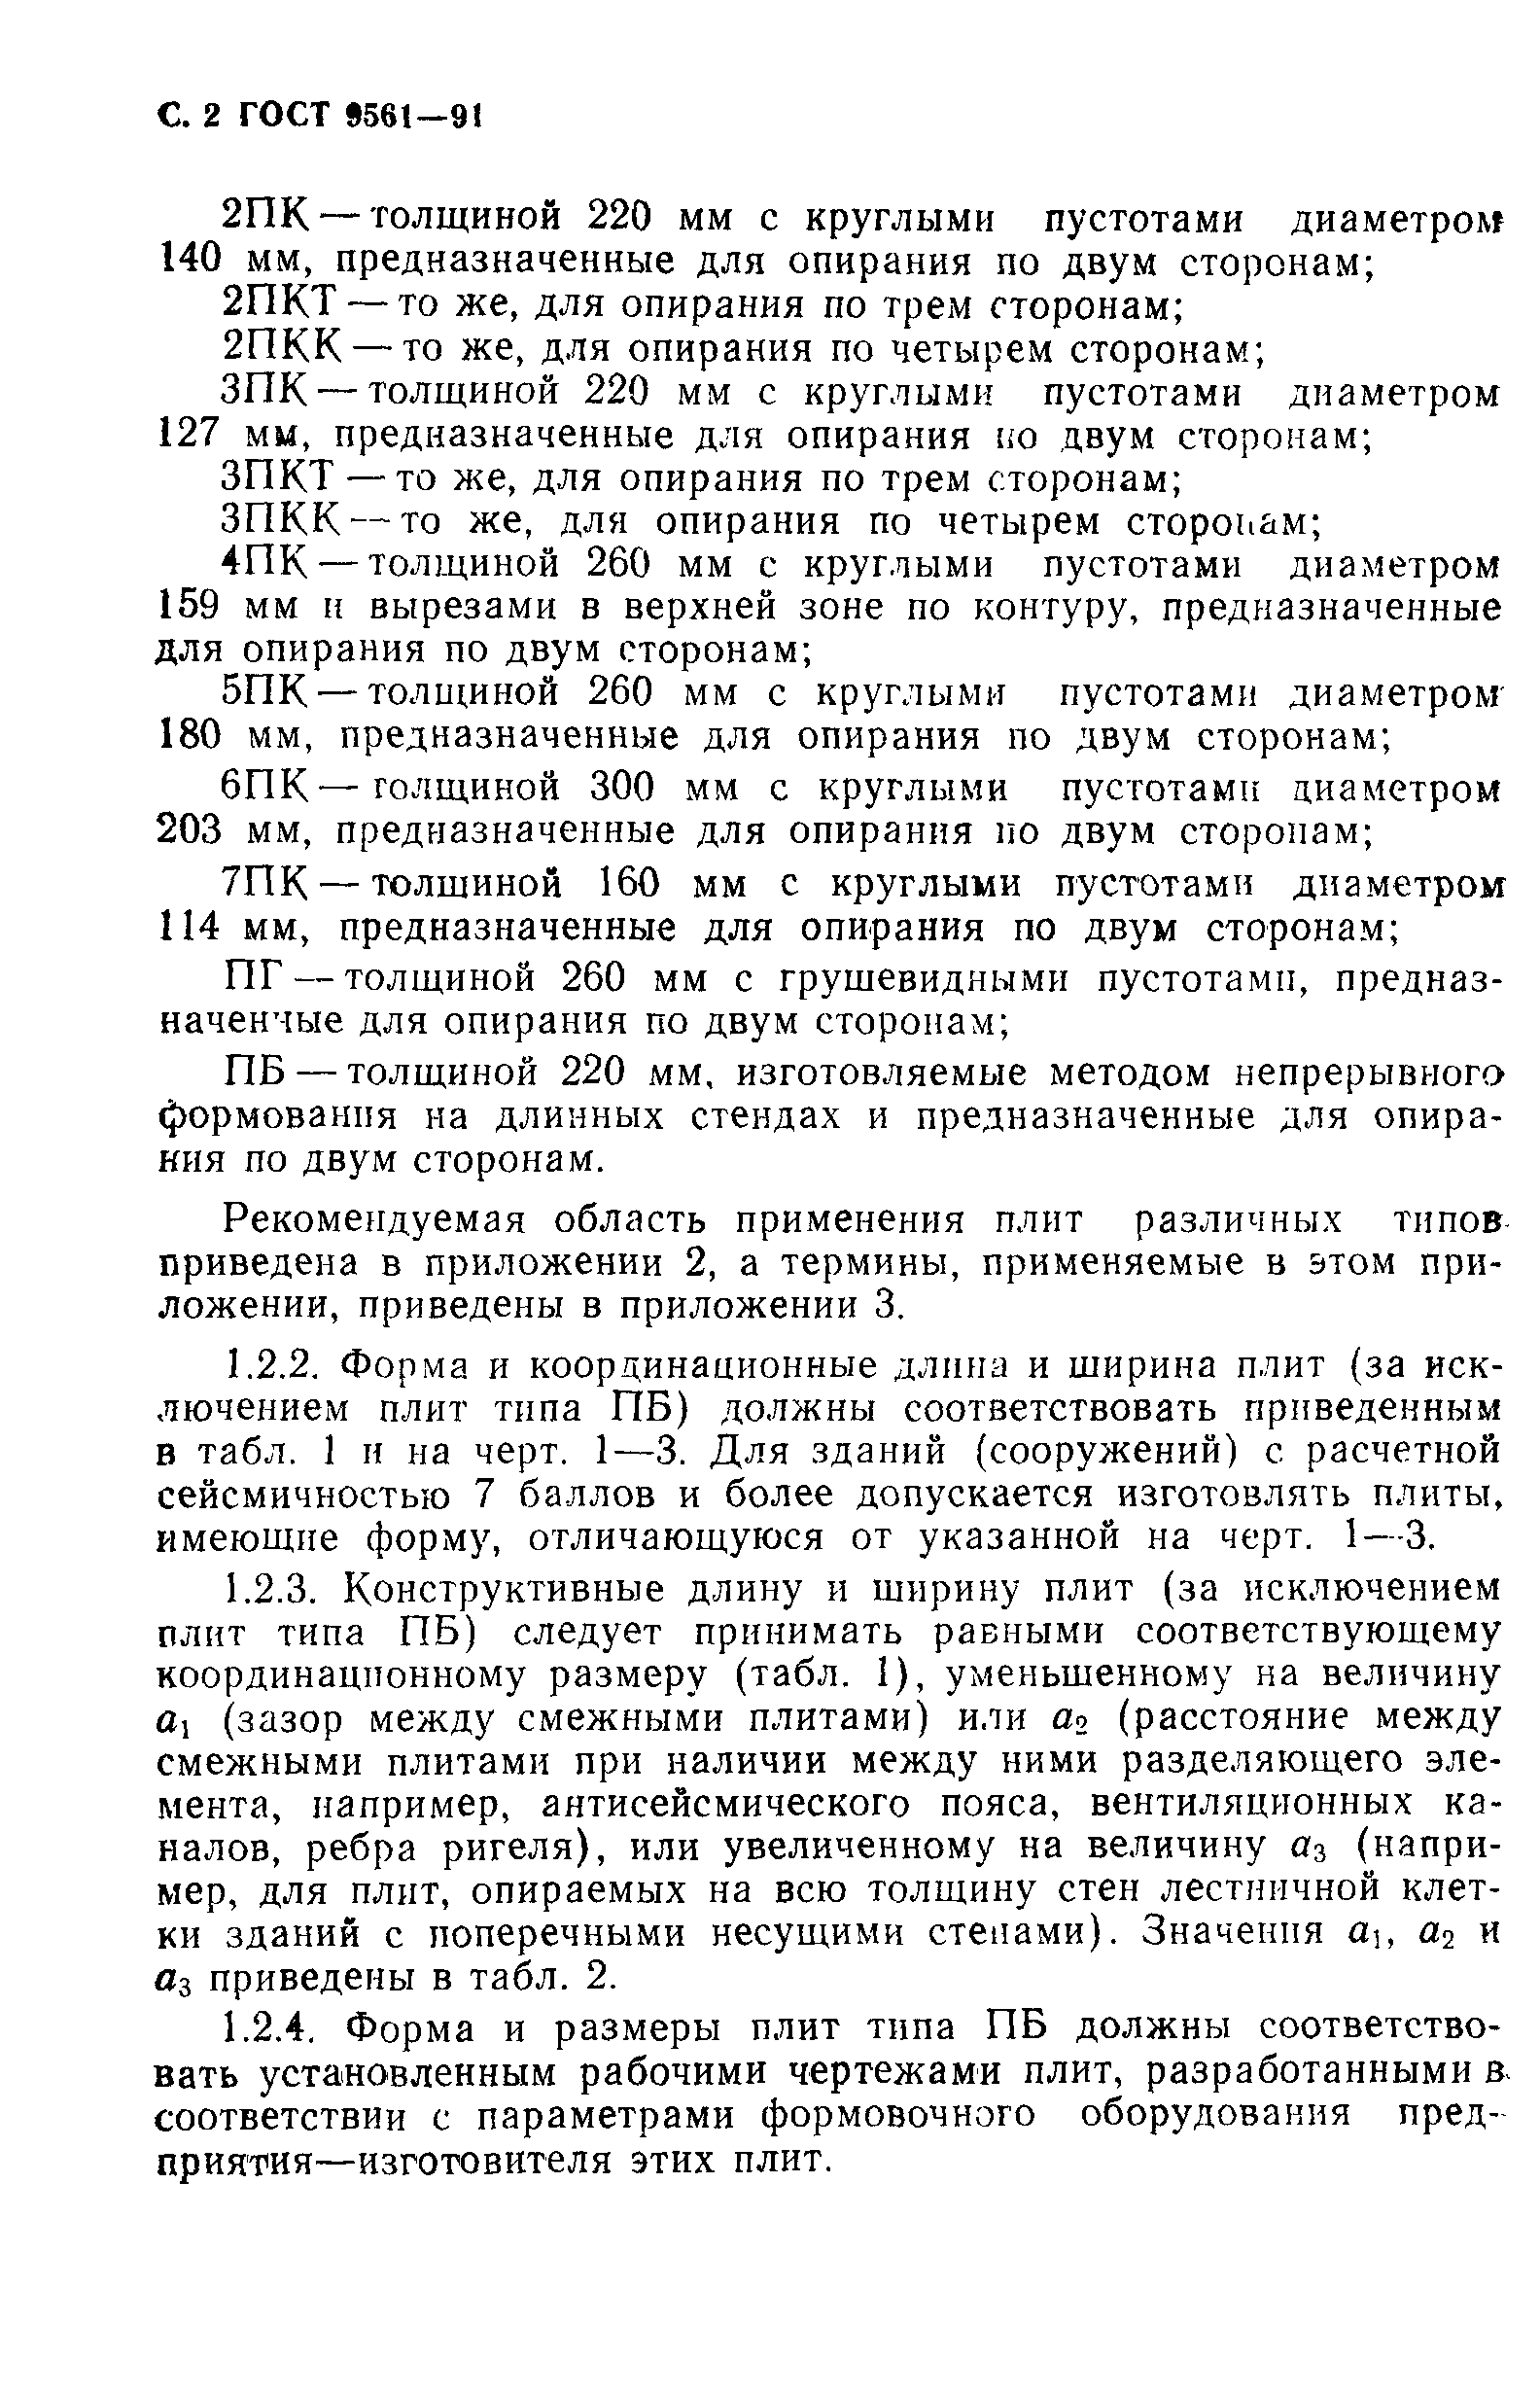 Плита ПК ГОСТ 9561-91